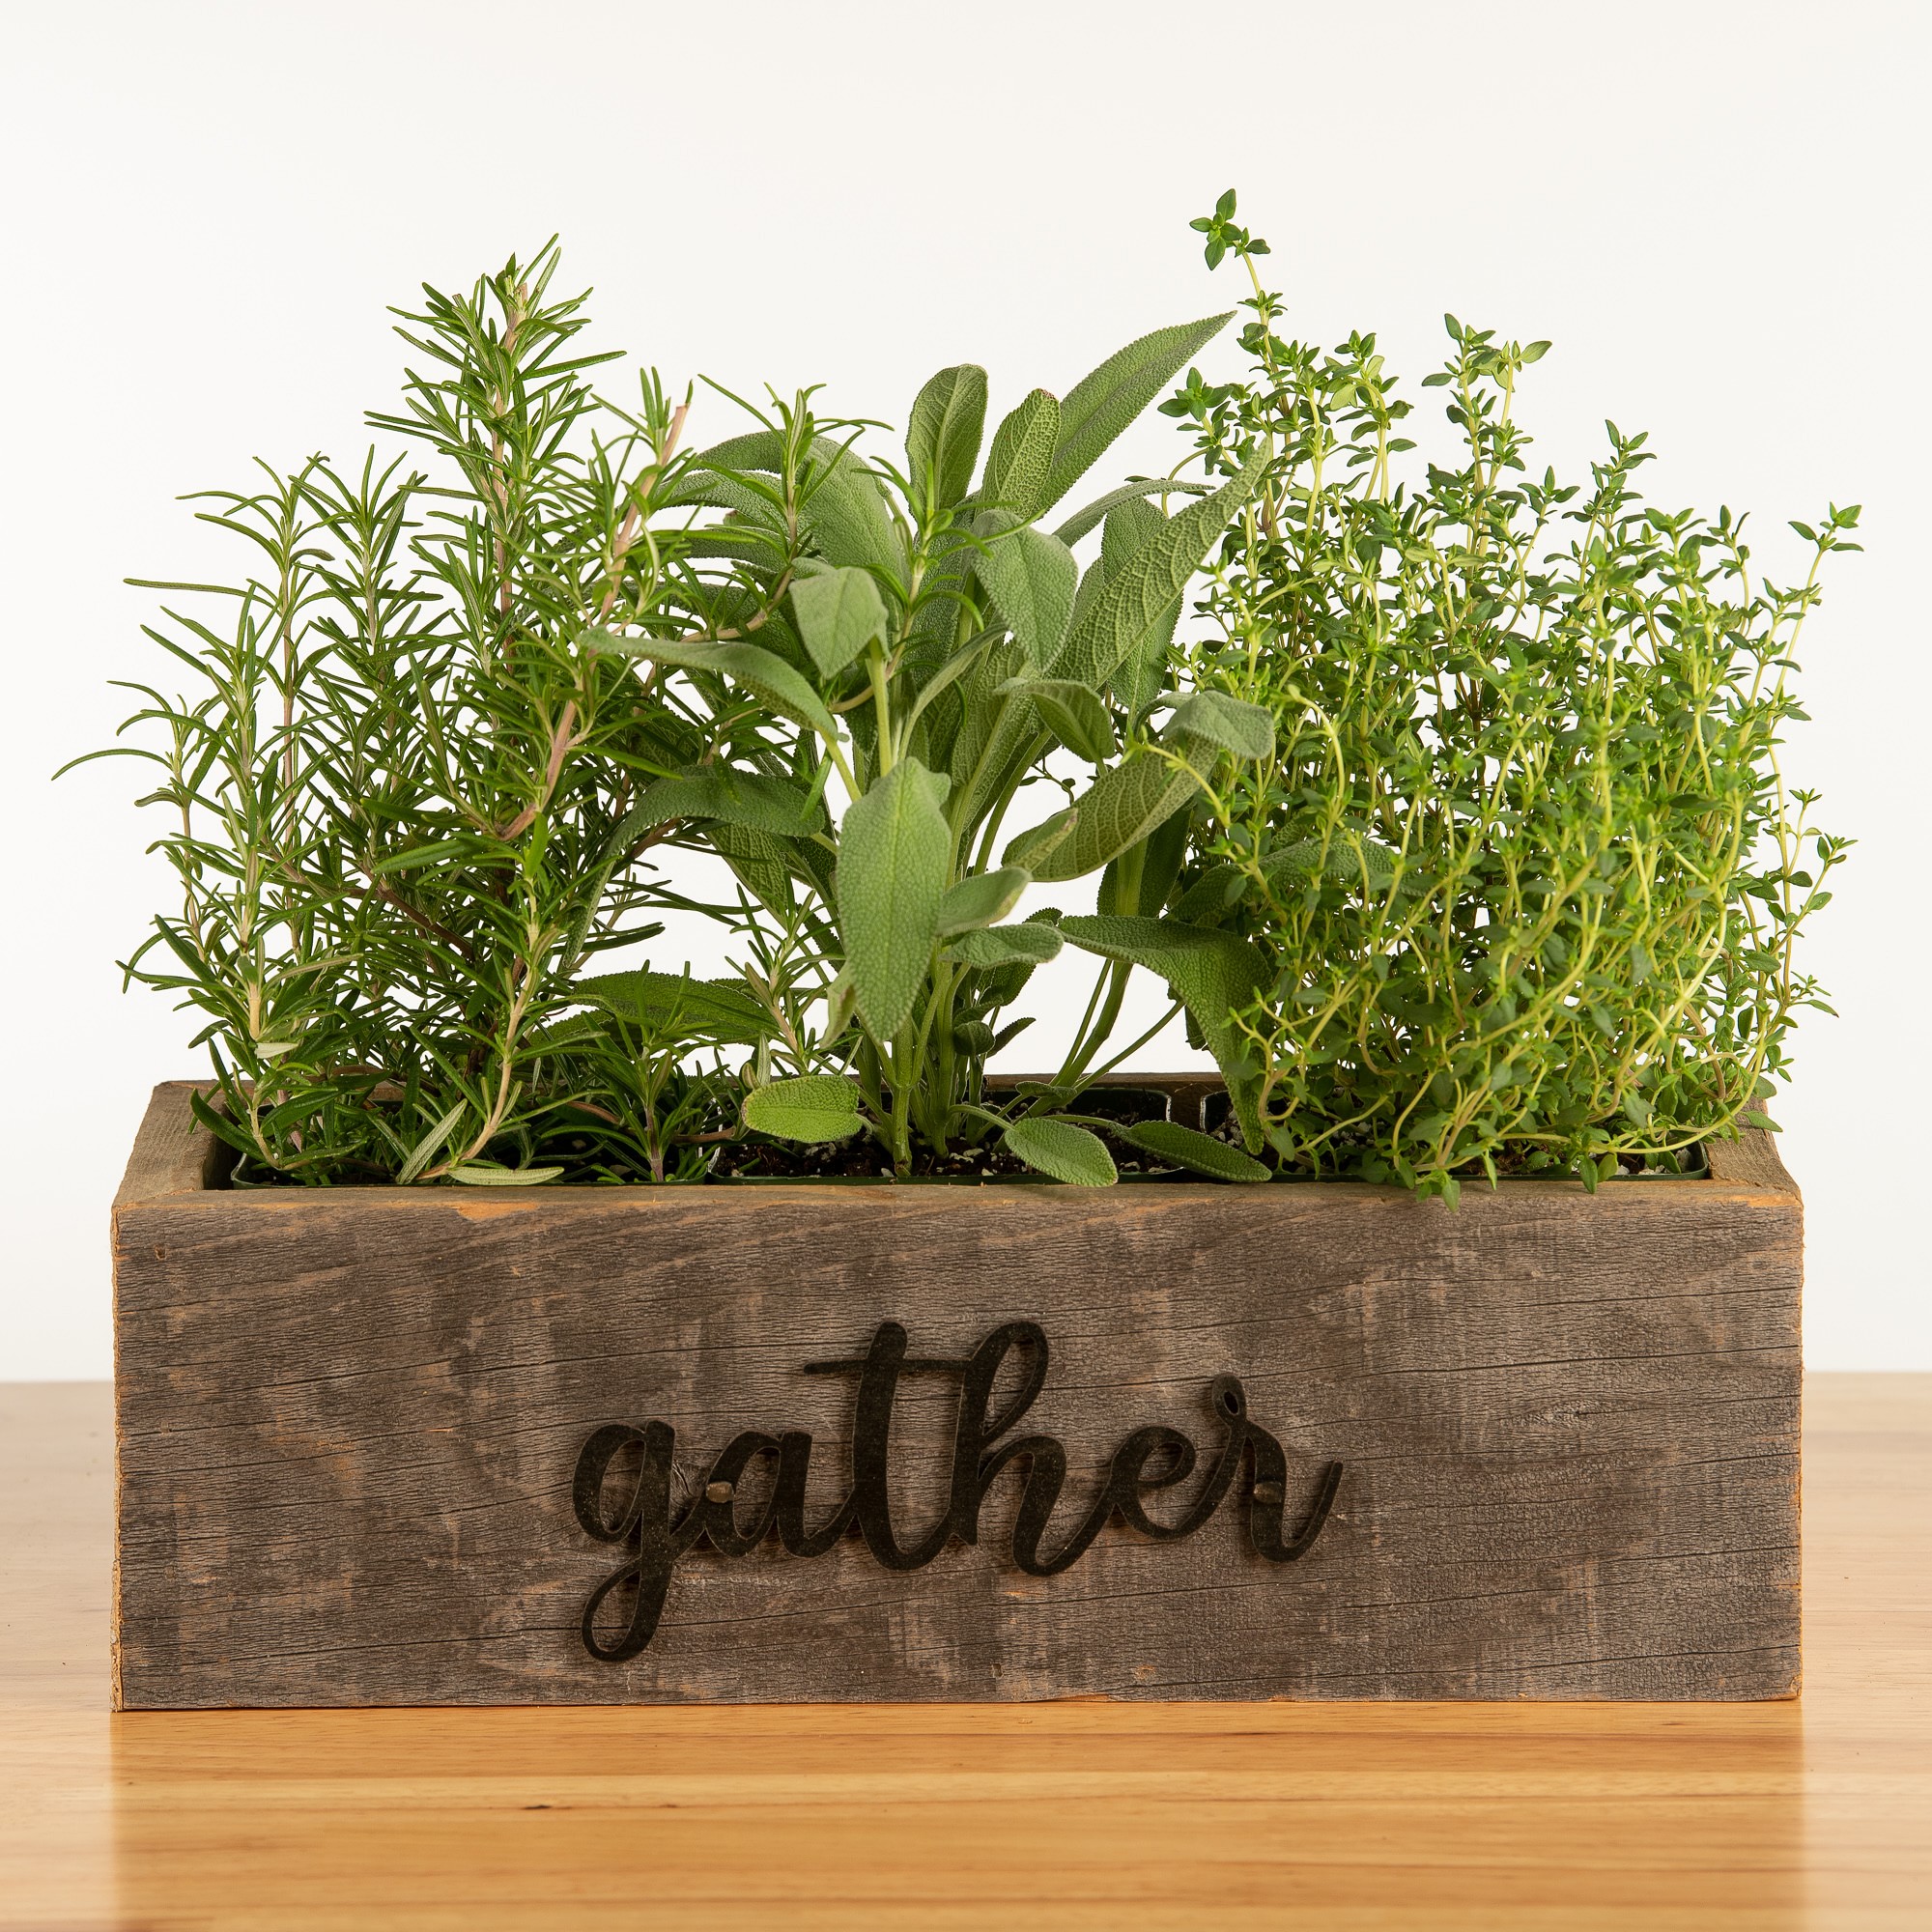 Live Triple Herb Garden in "Gather" Wooden Planter